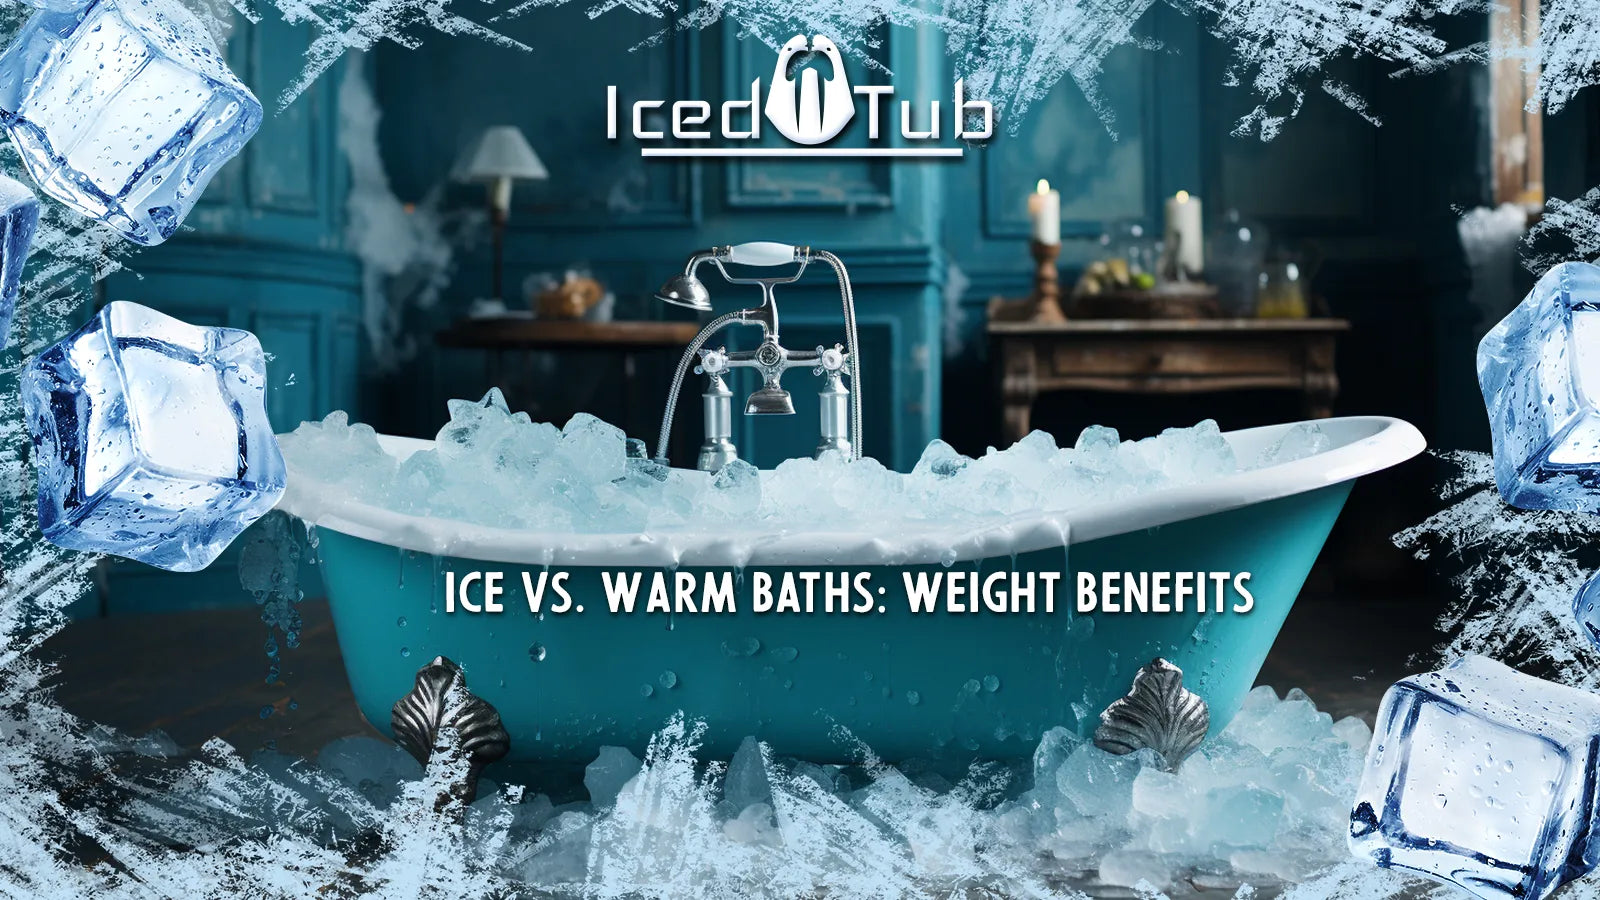 Ice vs. Warm Baths Weight Benefits